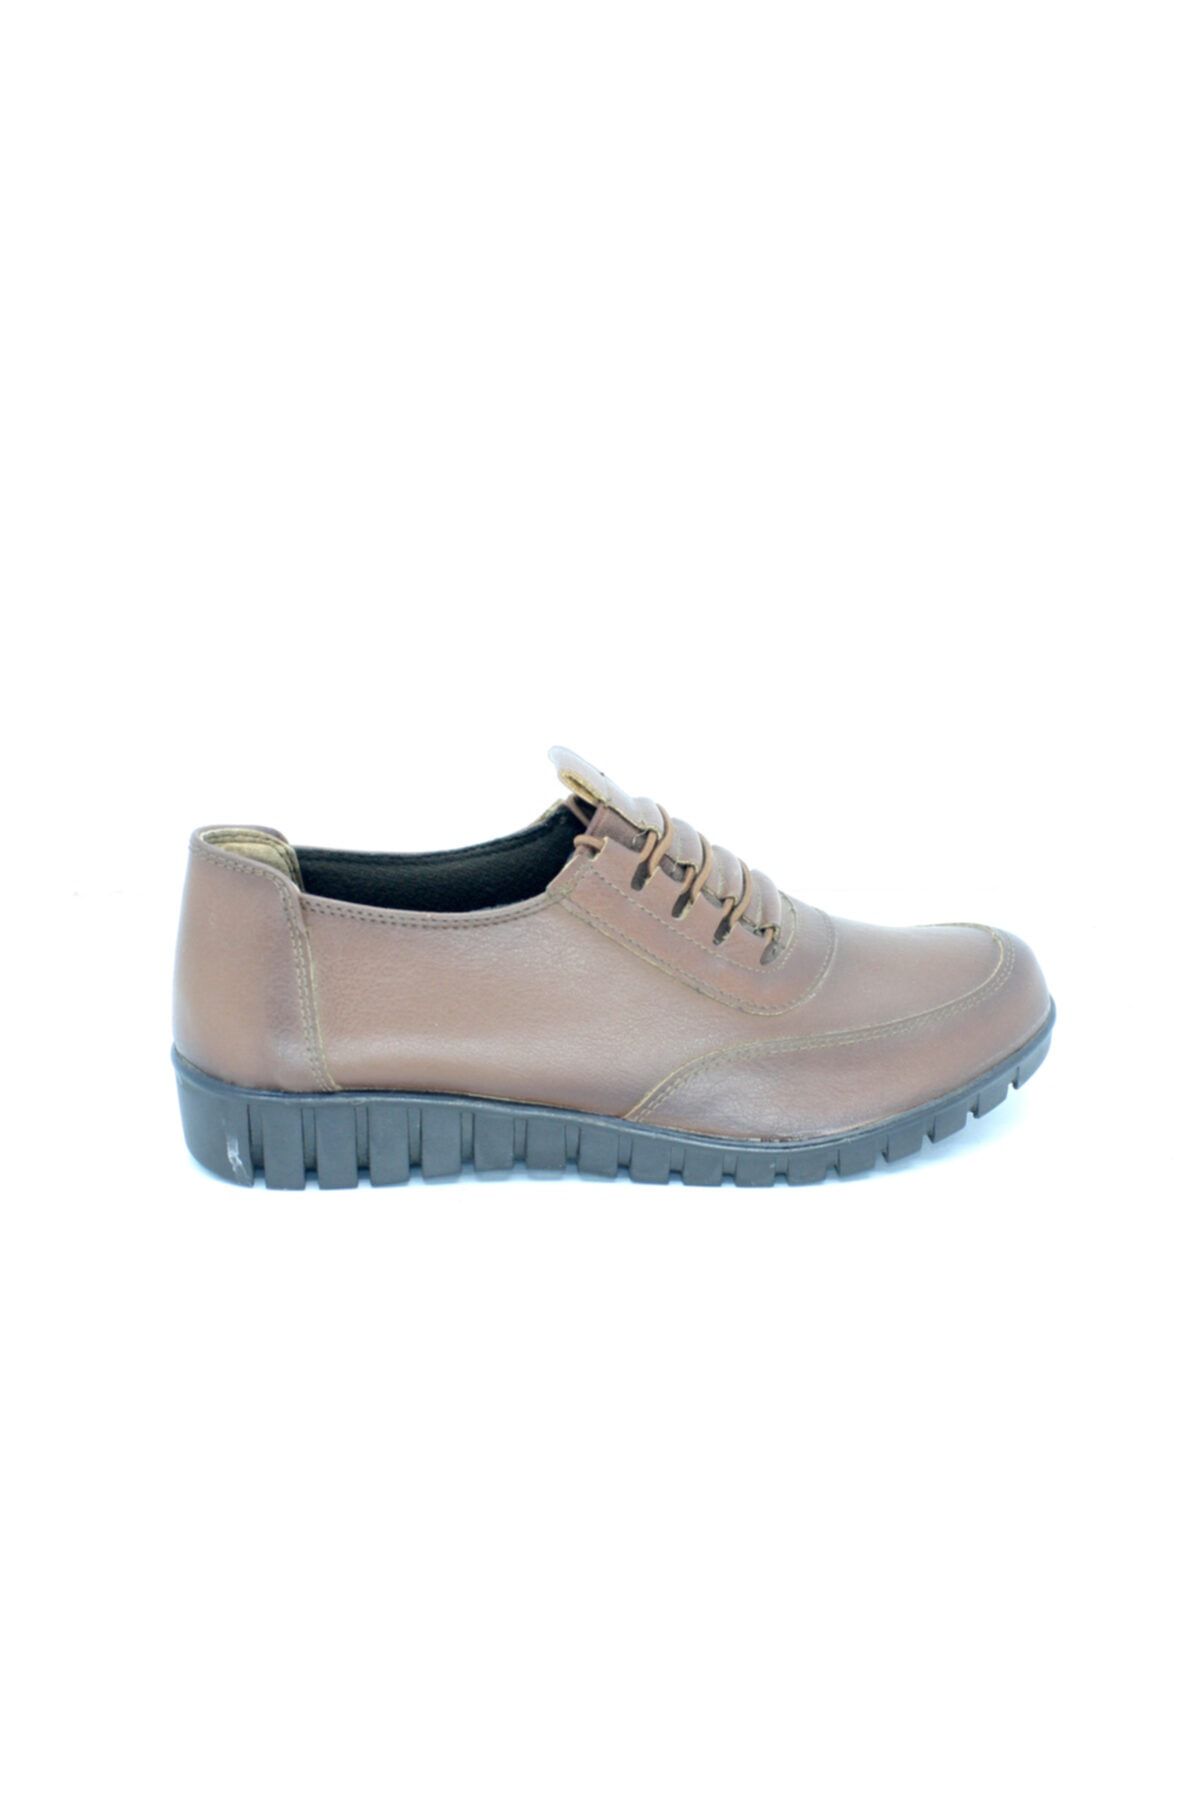 Polaris 156795.z Bayan Confort Kadın Günlük Ayakkabı